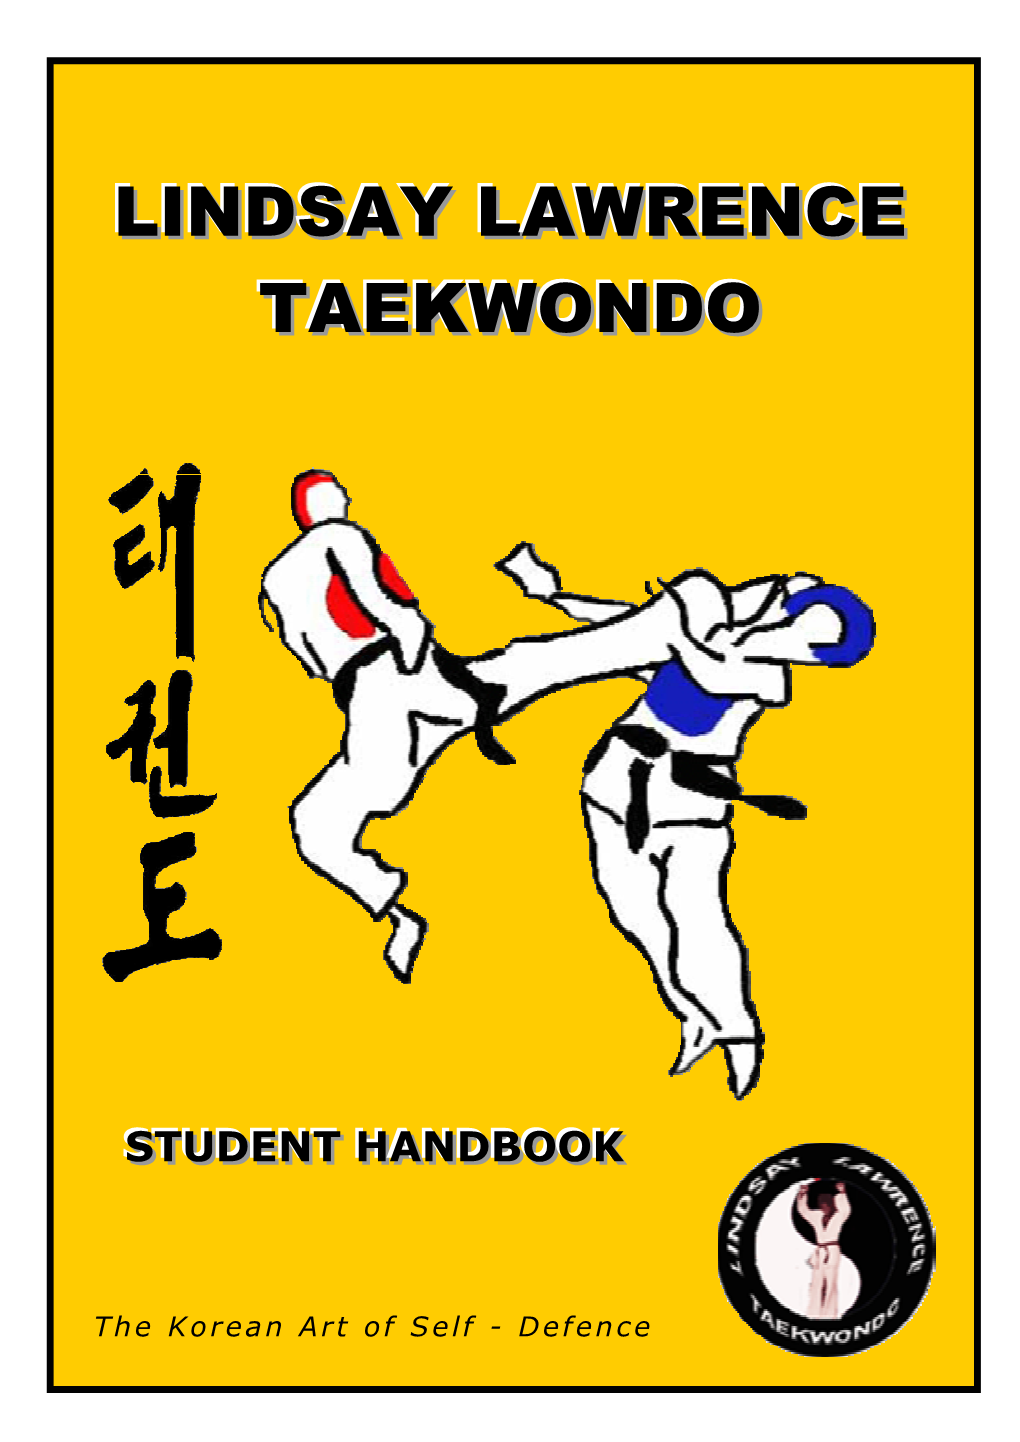 LLTKD Handbook